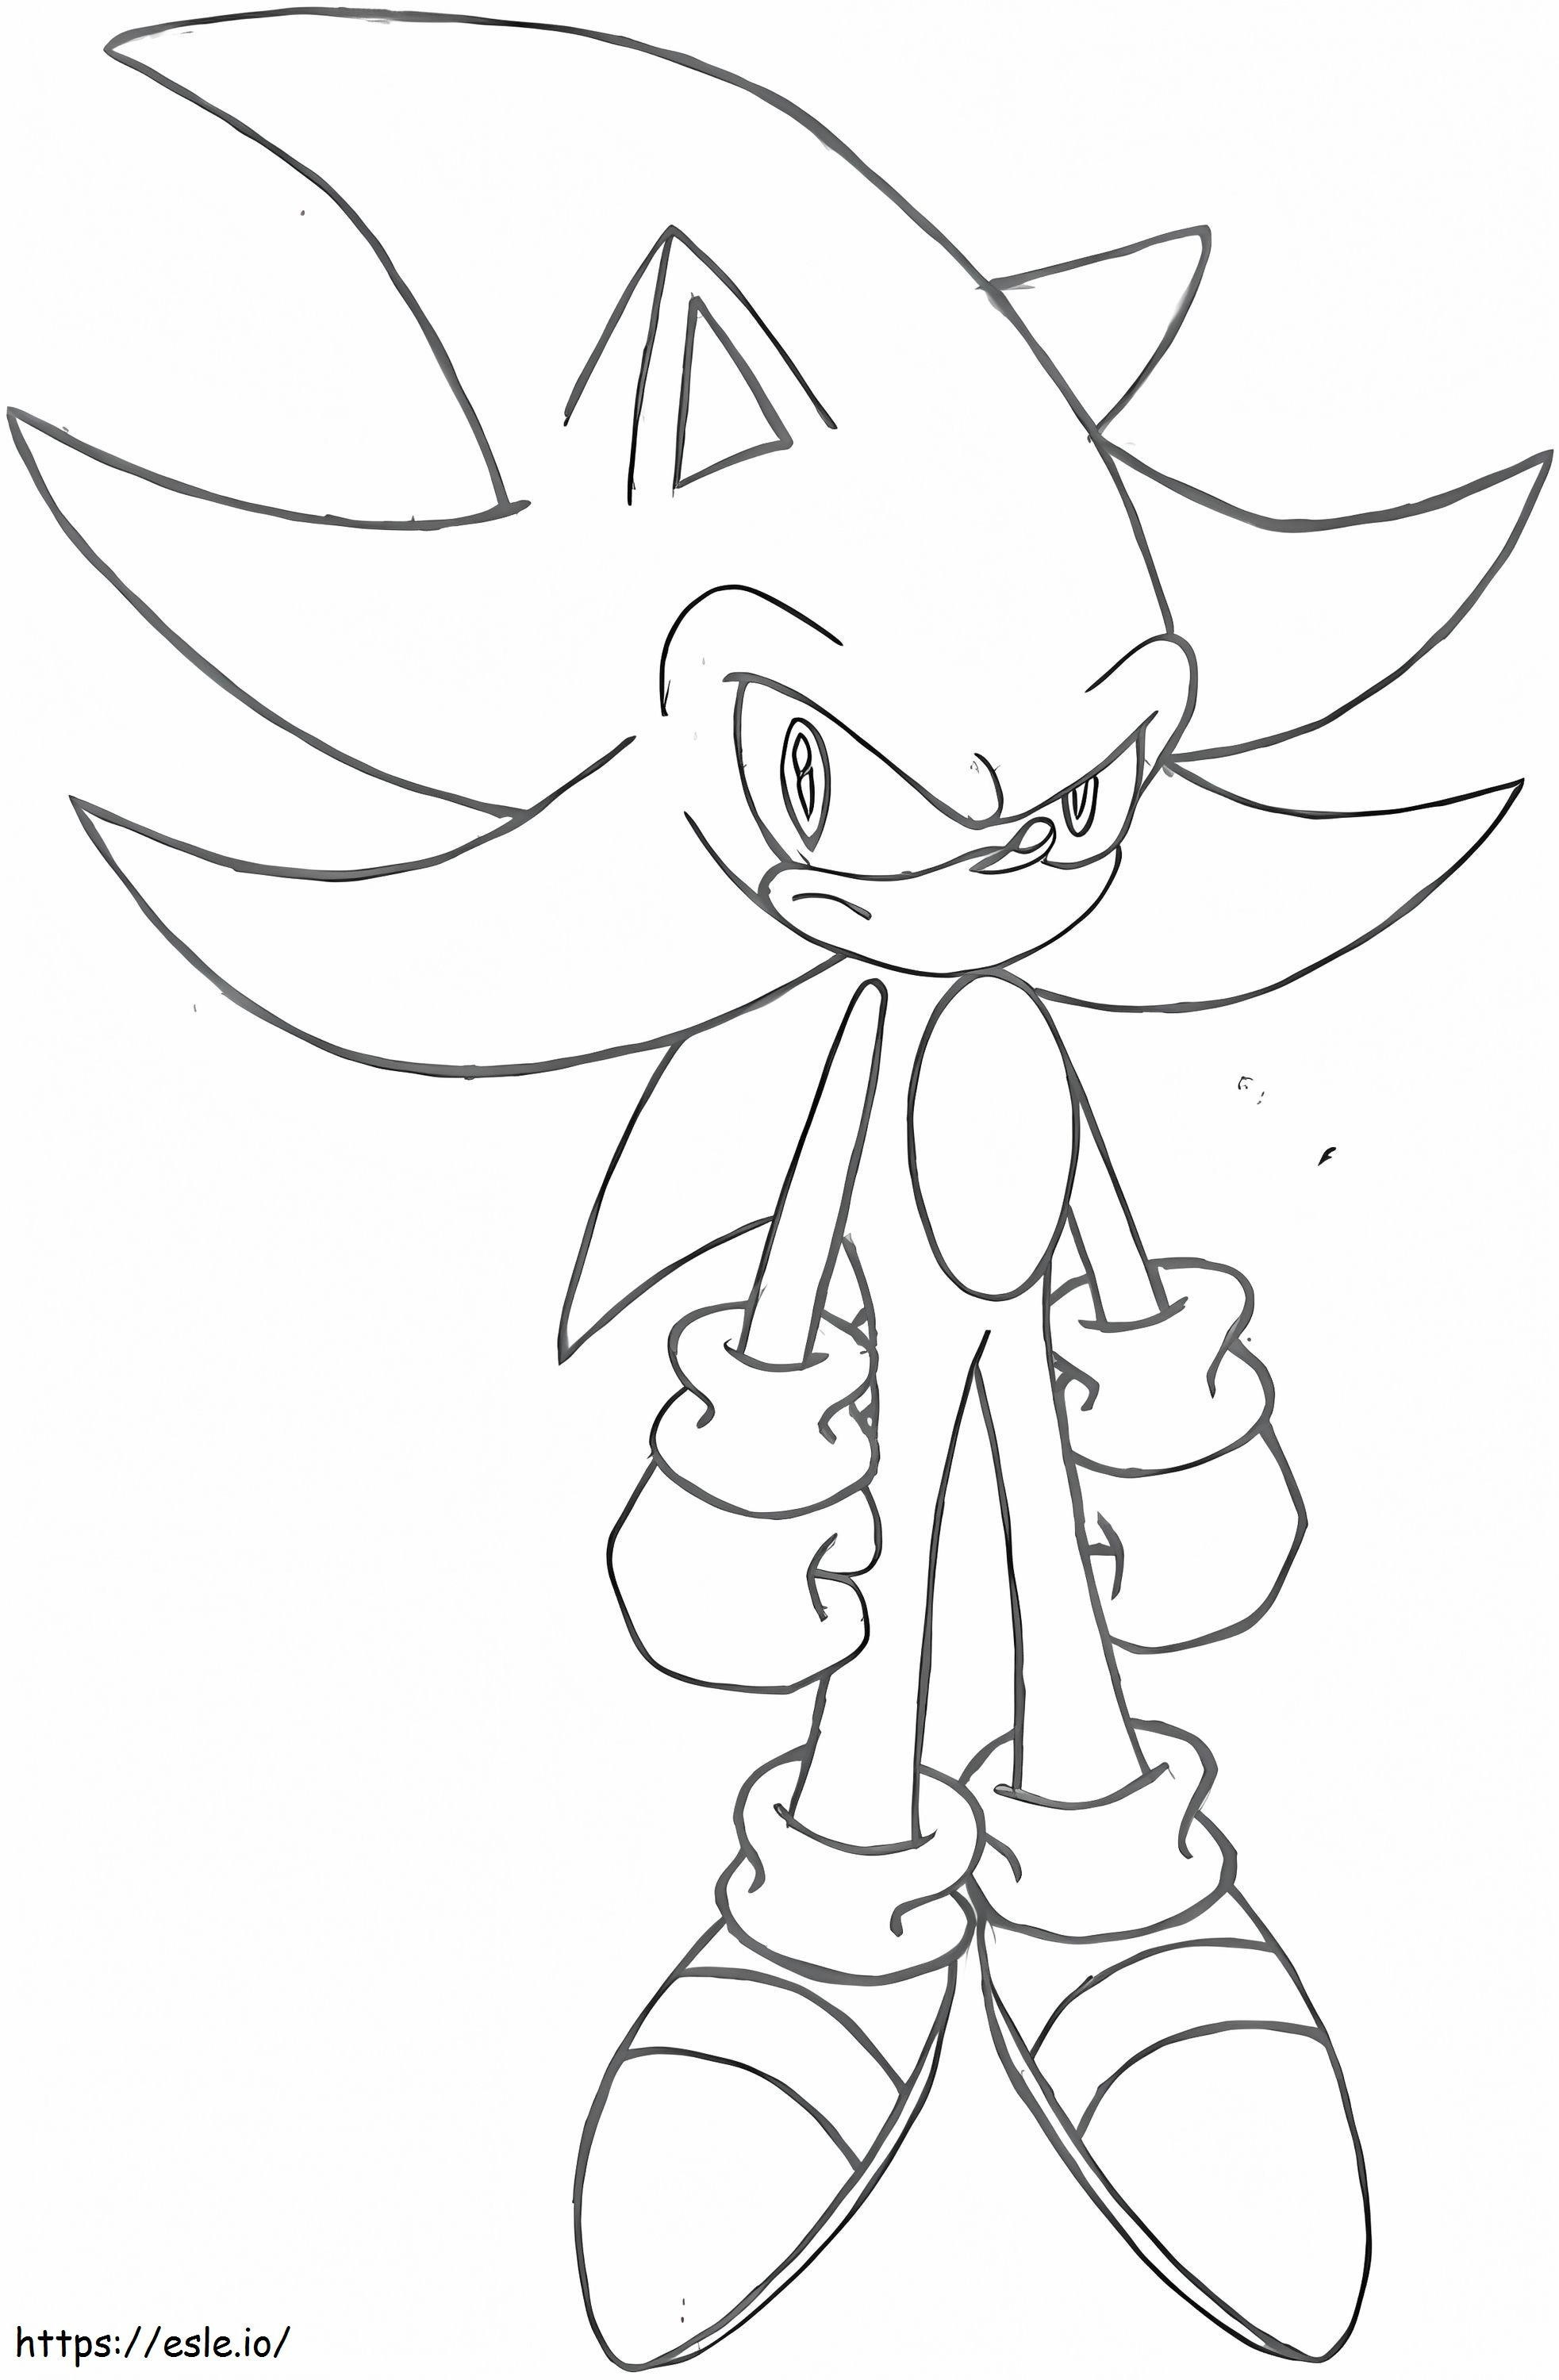 Sonic is boos kleurplaat kleurplaat